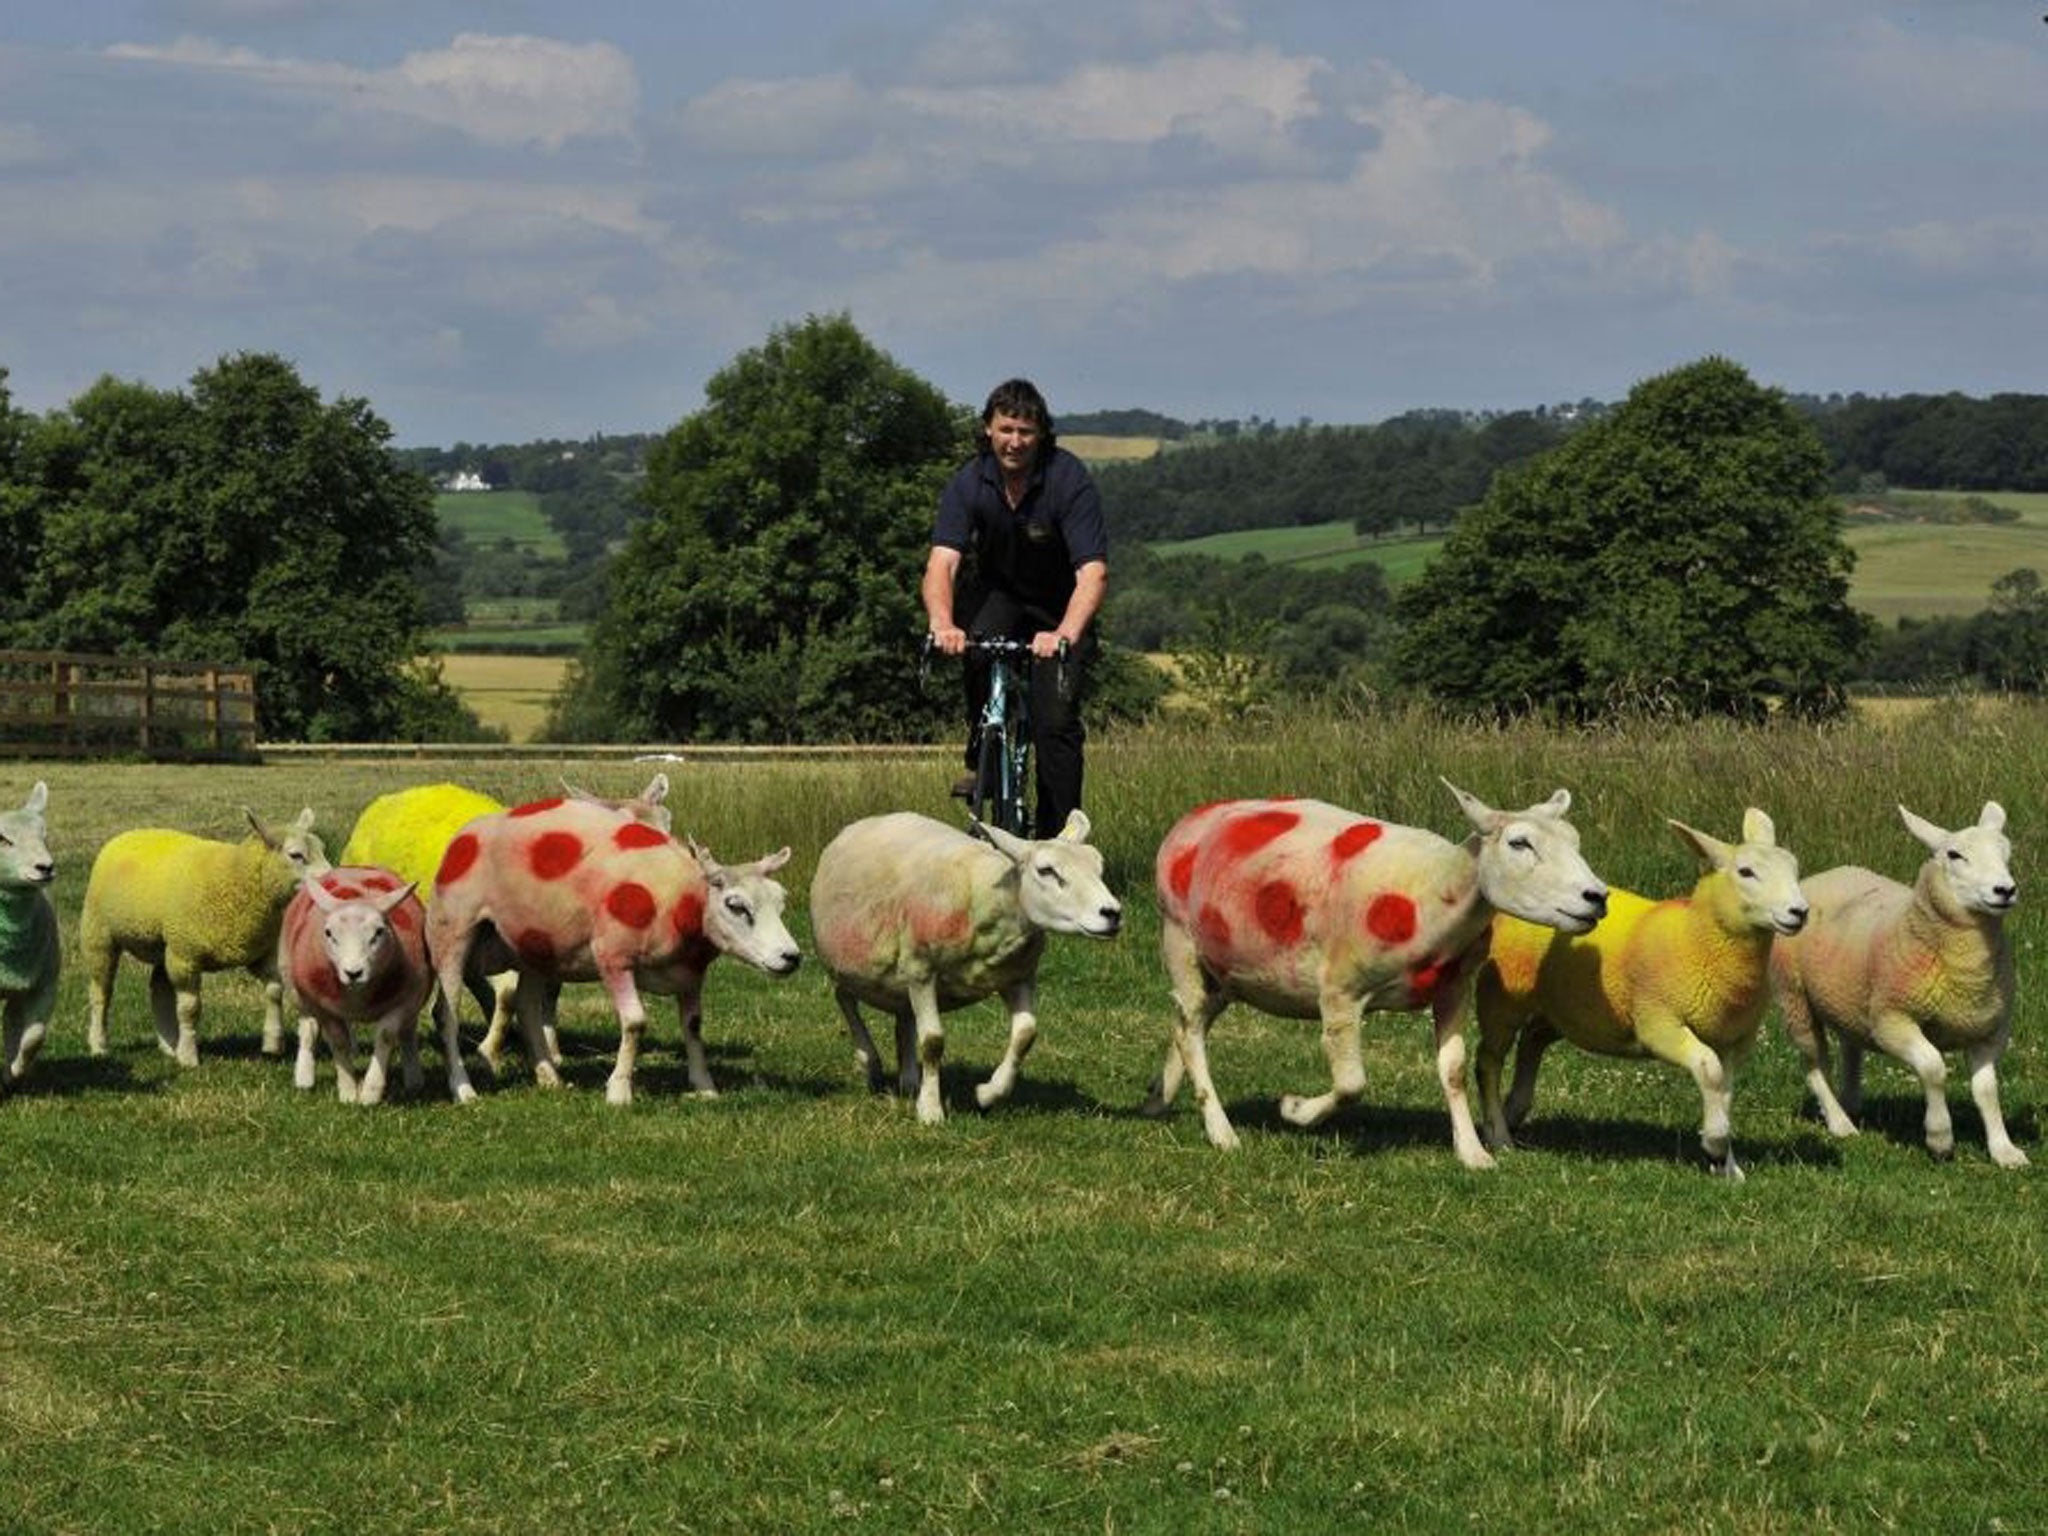 Sheep painted in the colors of the Tour de France winners jerseys, graze in fields near Harrogate